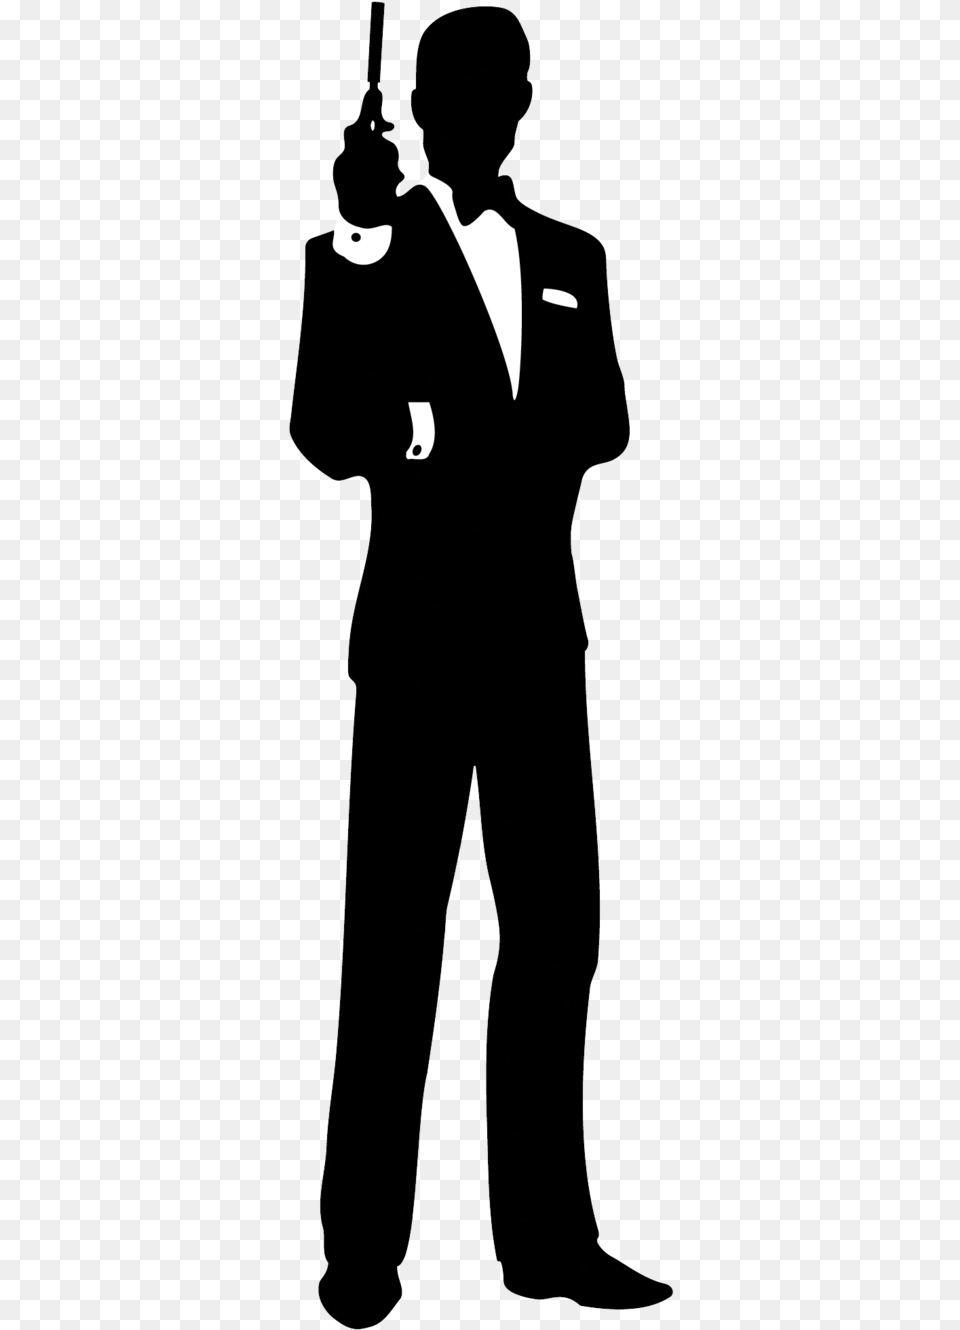 James Bond Film Series Silhouette Clip Art James Bond Silhouette, Tuxedo, Suit, Clothing, Formal Wear Png Image